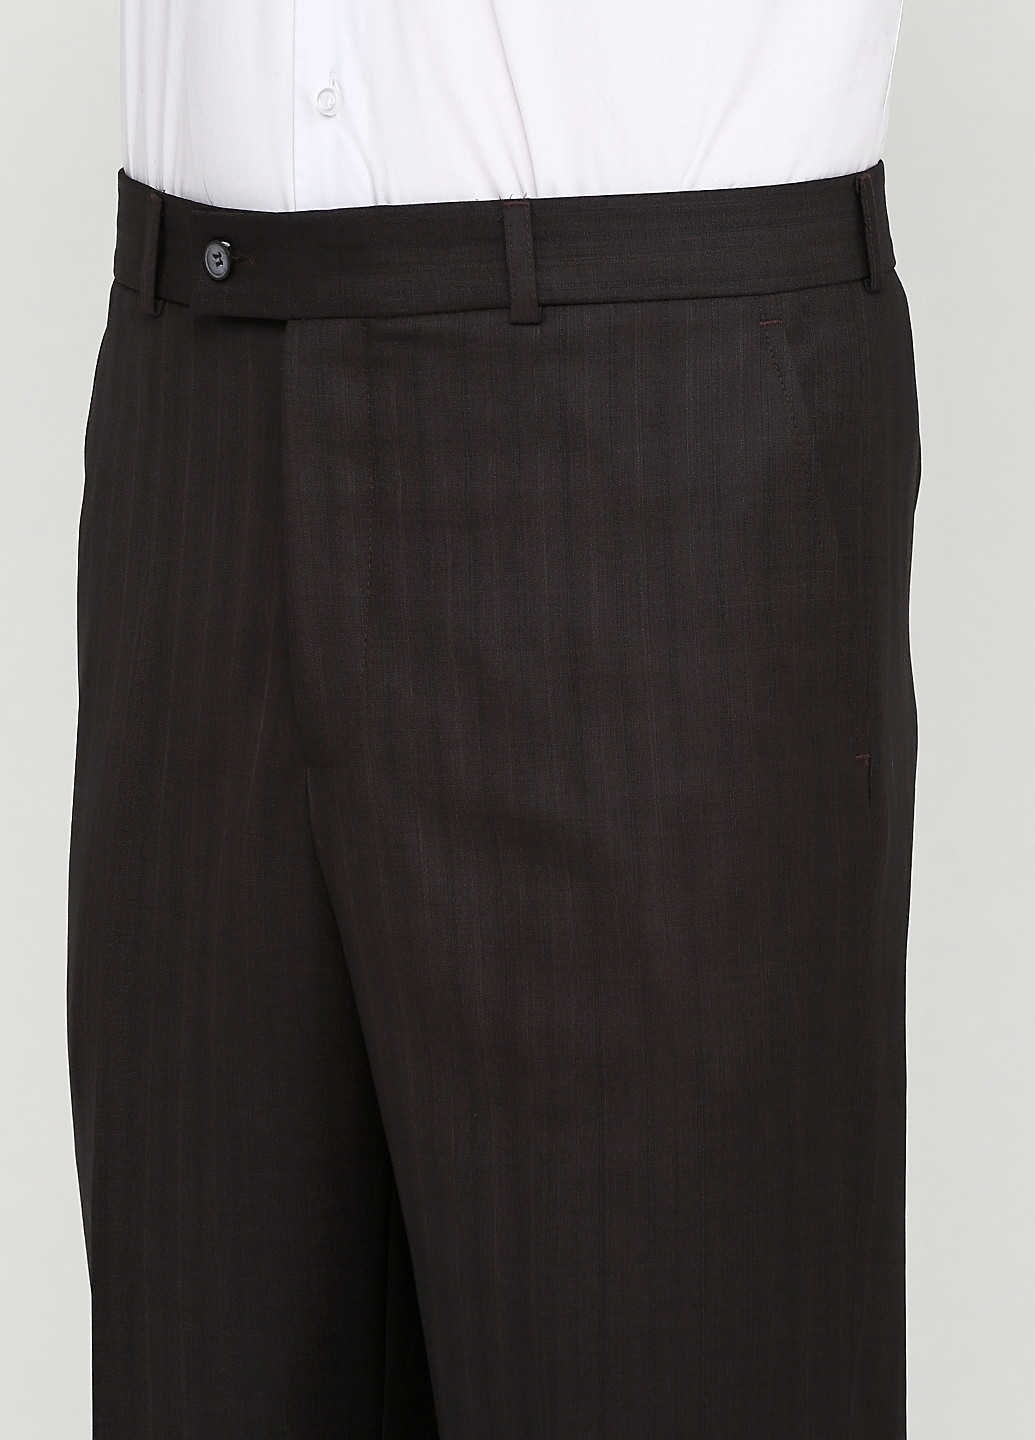 Темно-коричневый демисезонный костюм (пиджак, брюки) брючный Galant